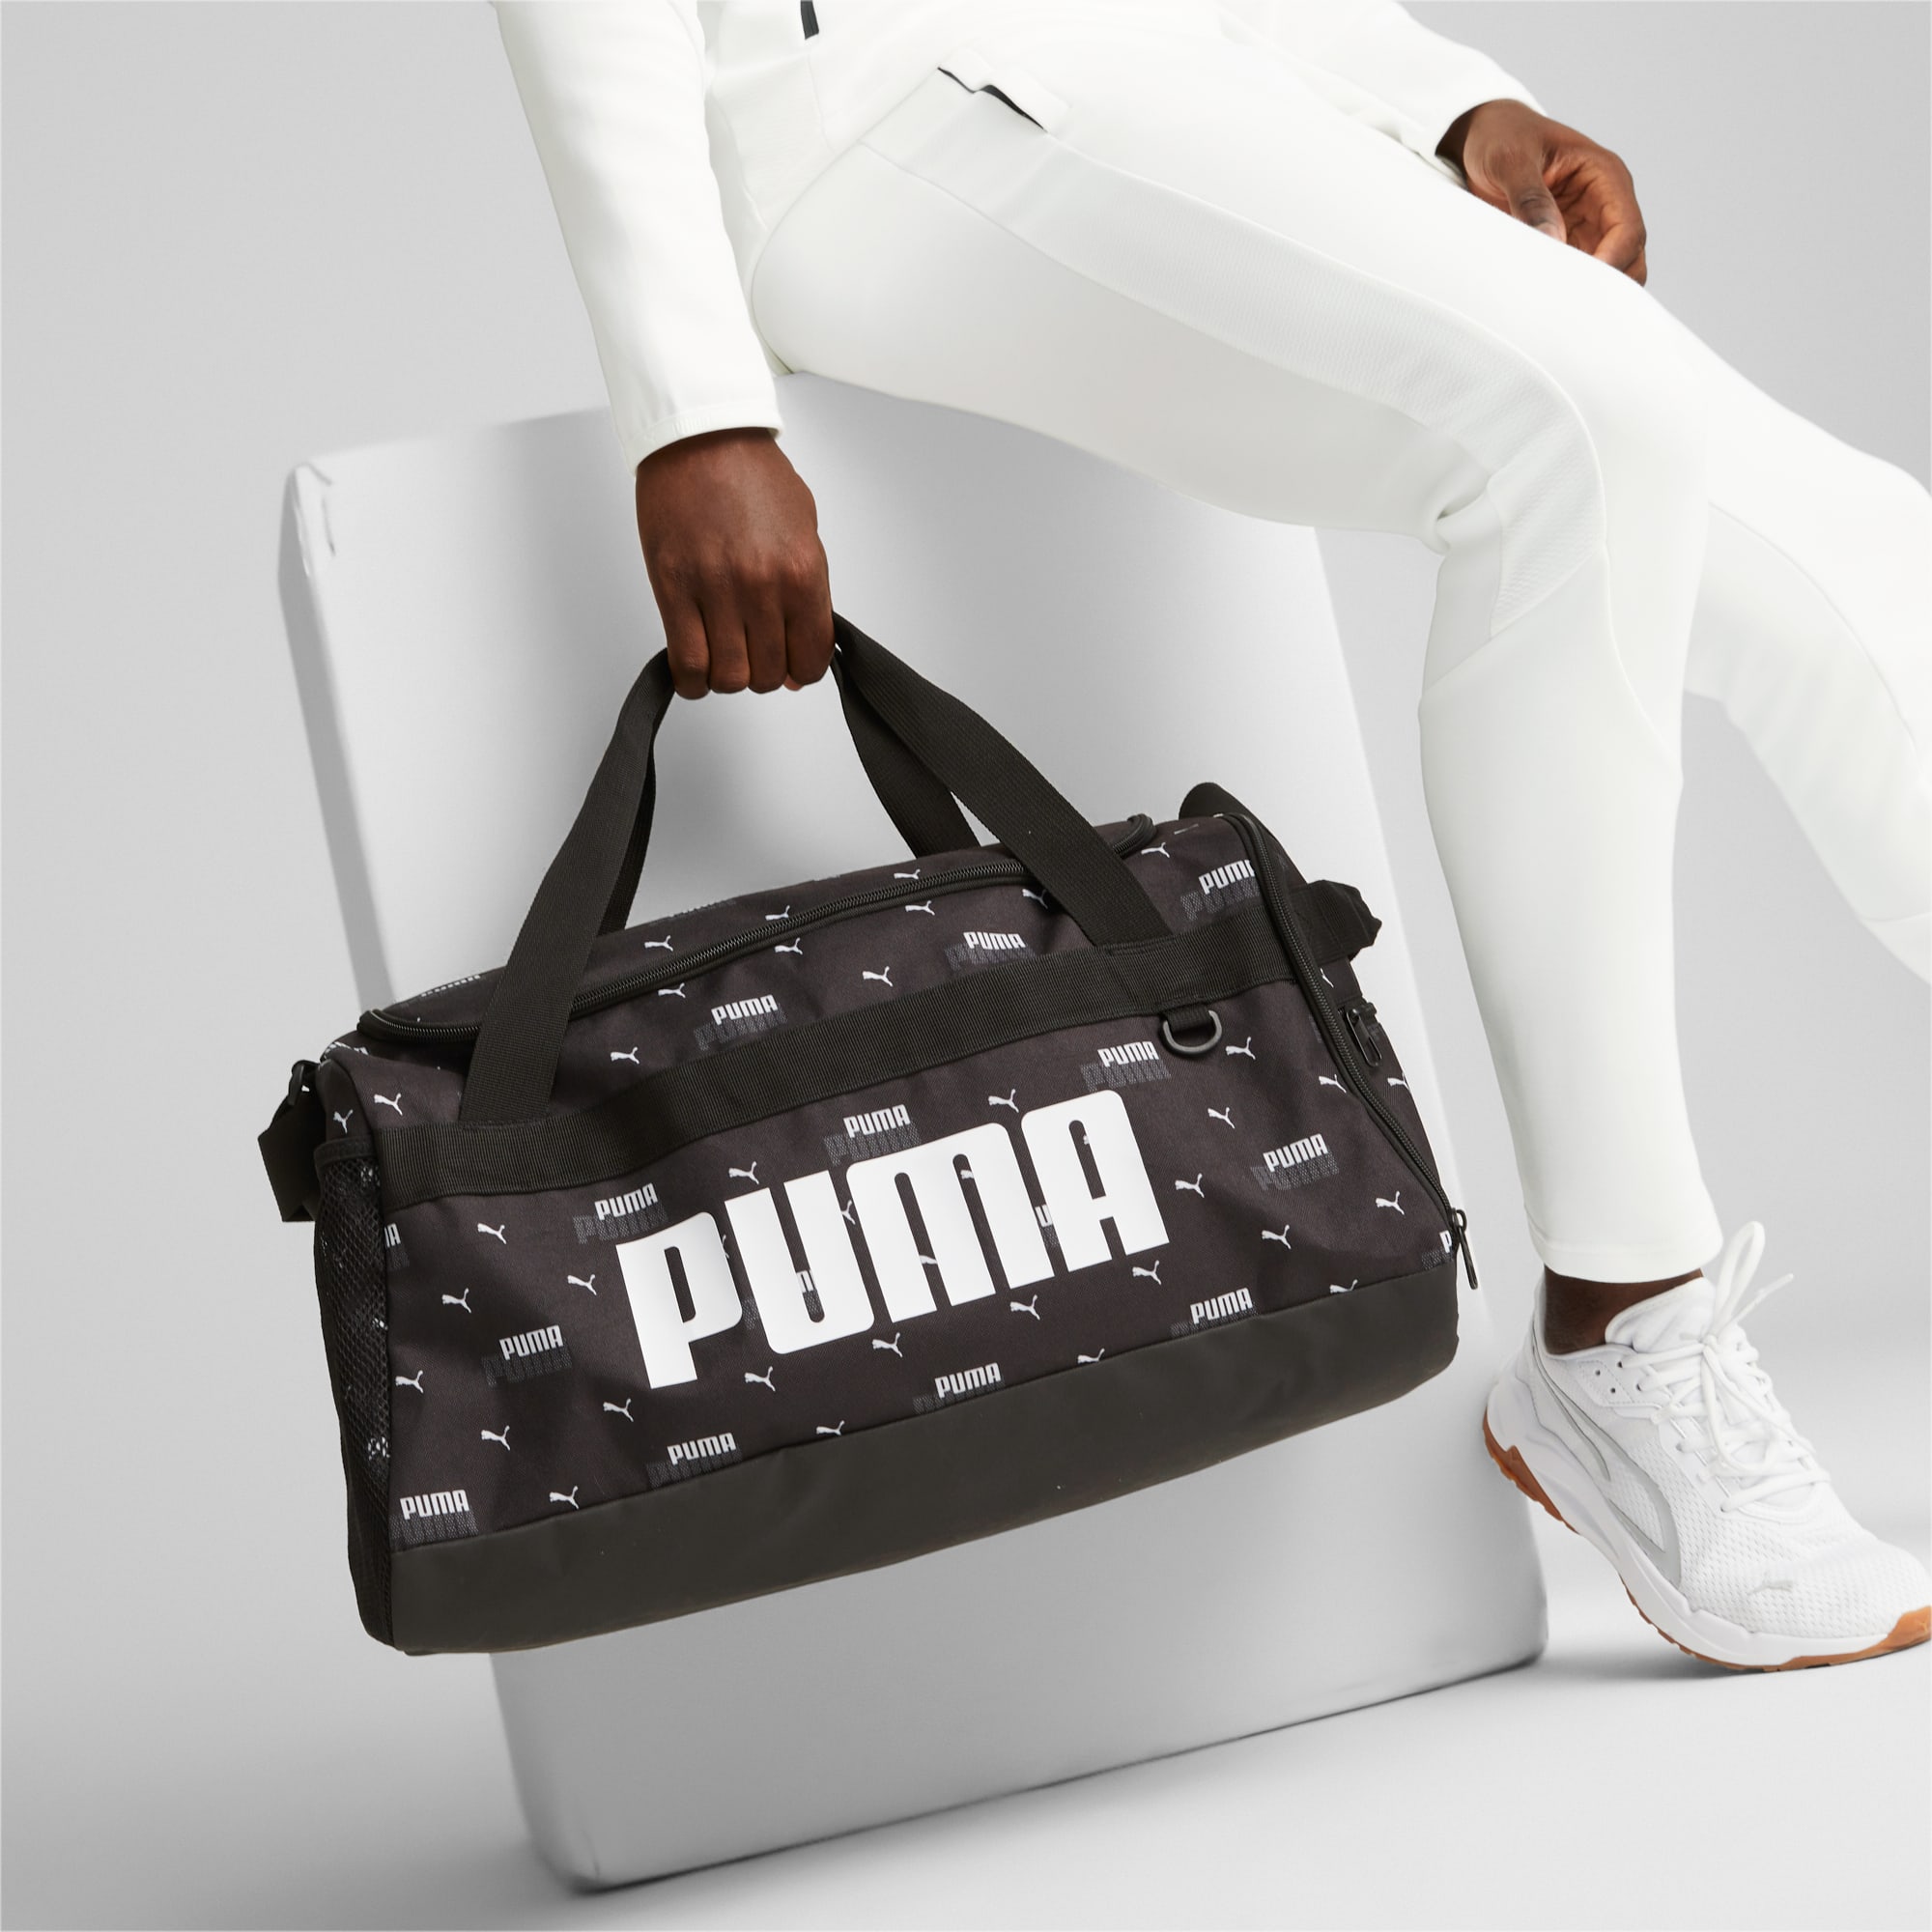 最終決算PUMA プーマプーマ チャレンジャー ダッフル バッグ M07953101 スポーツバッグ